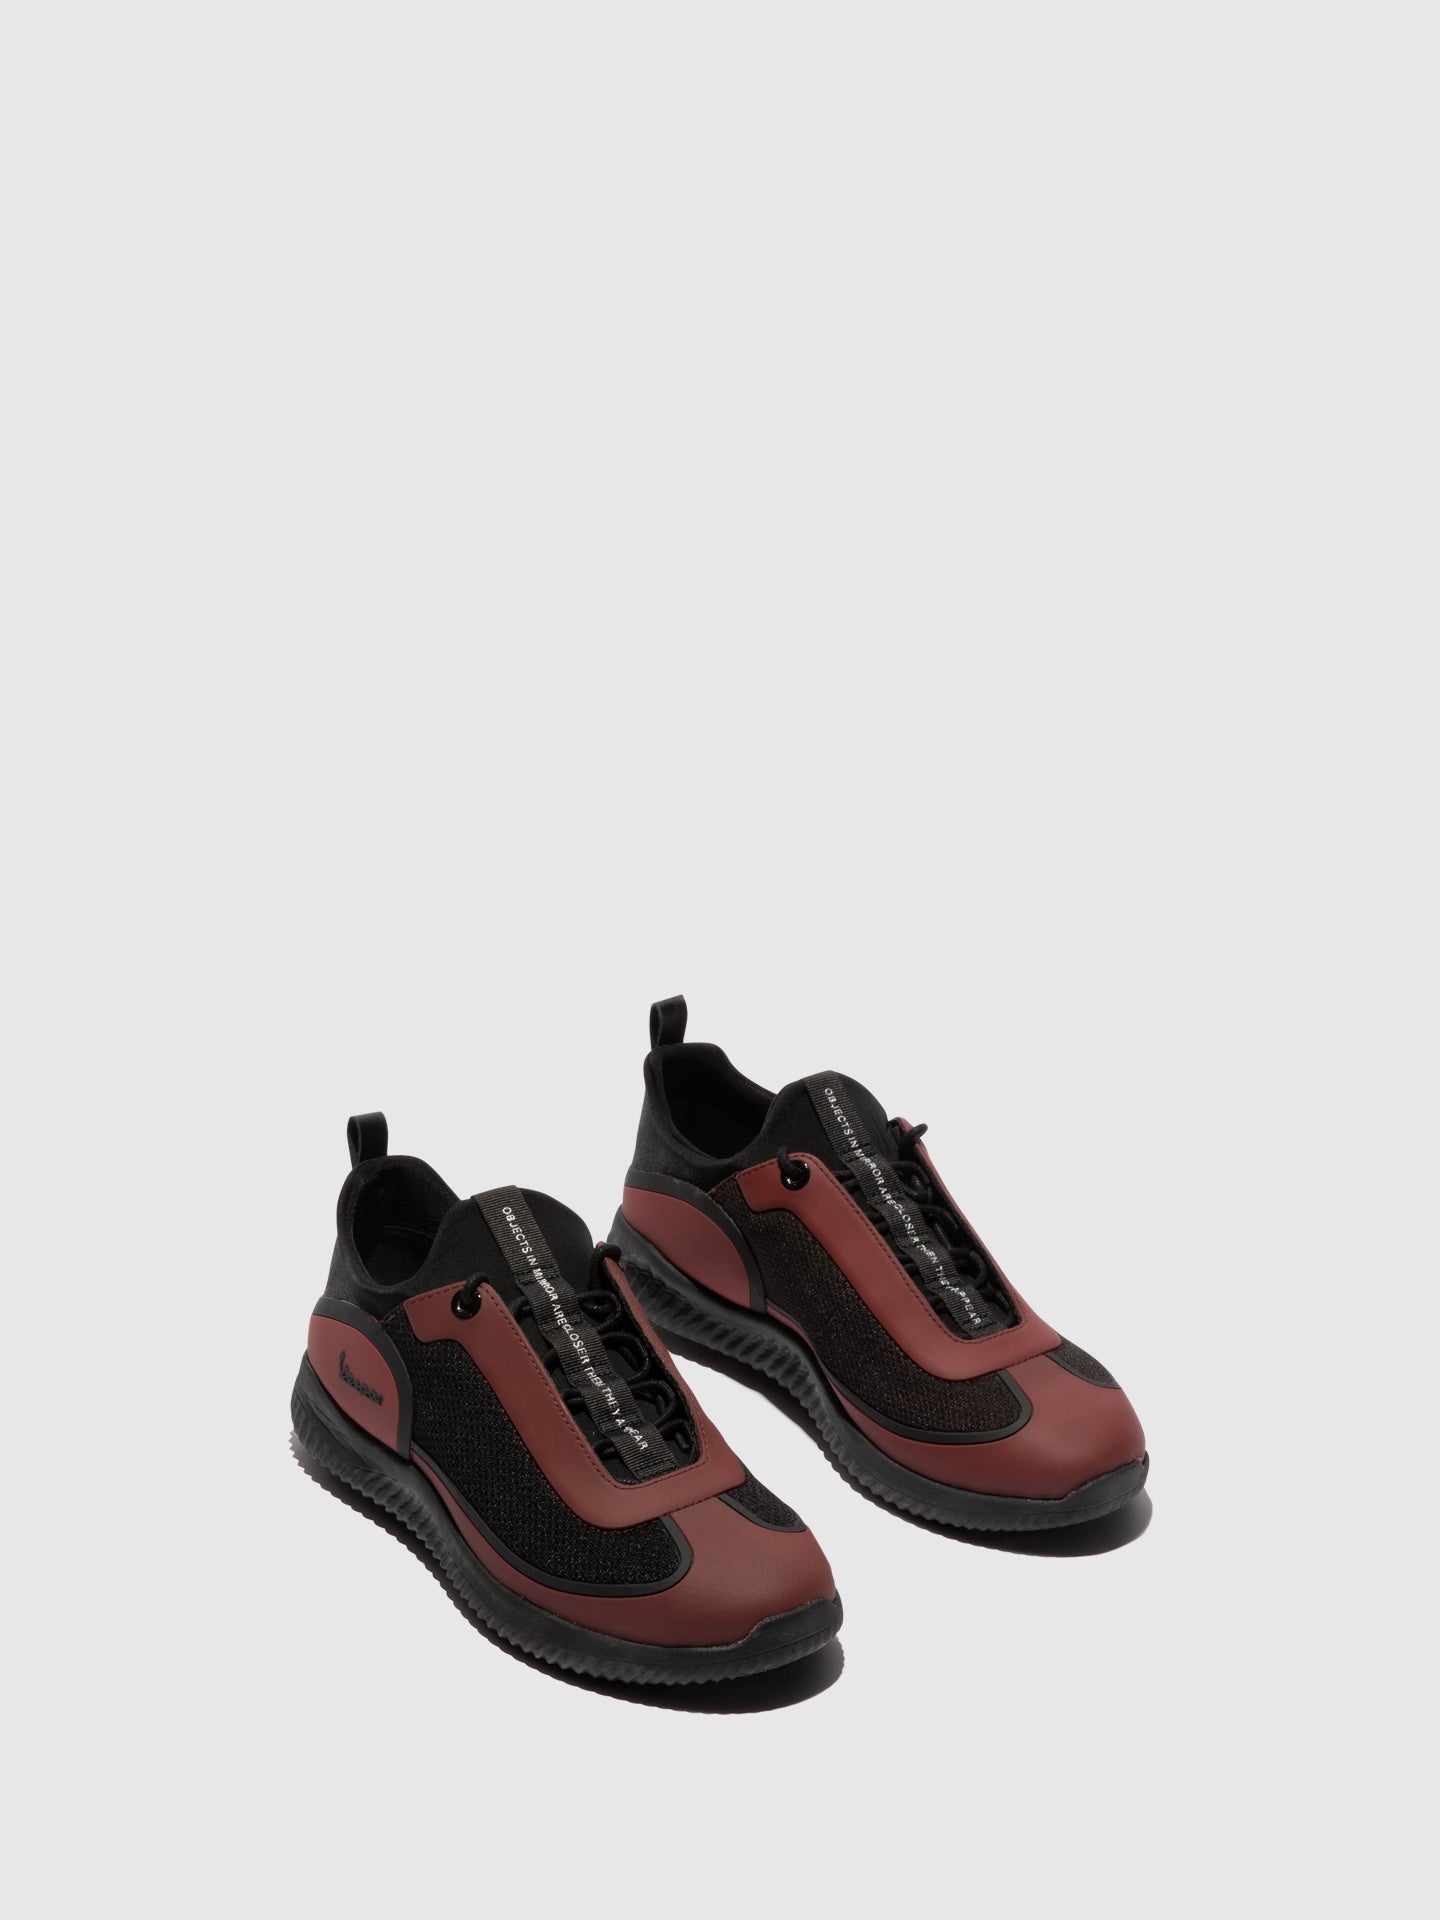 Vespa Red Black Lace-up Shoes